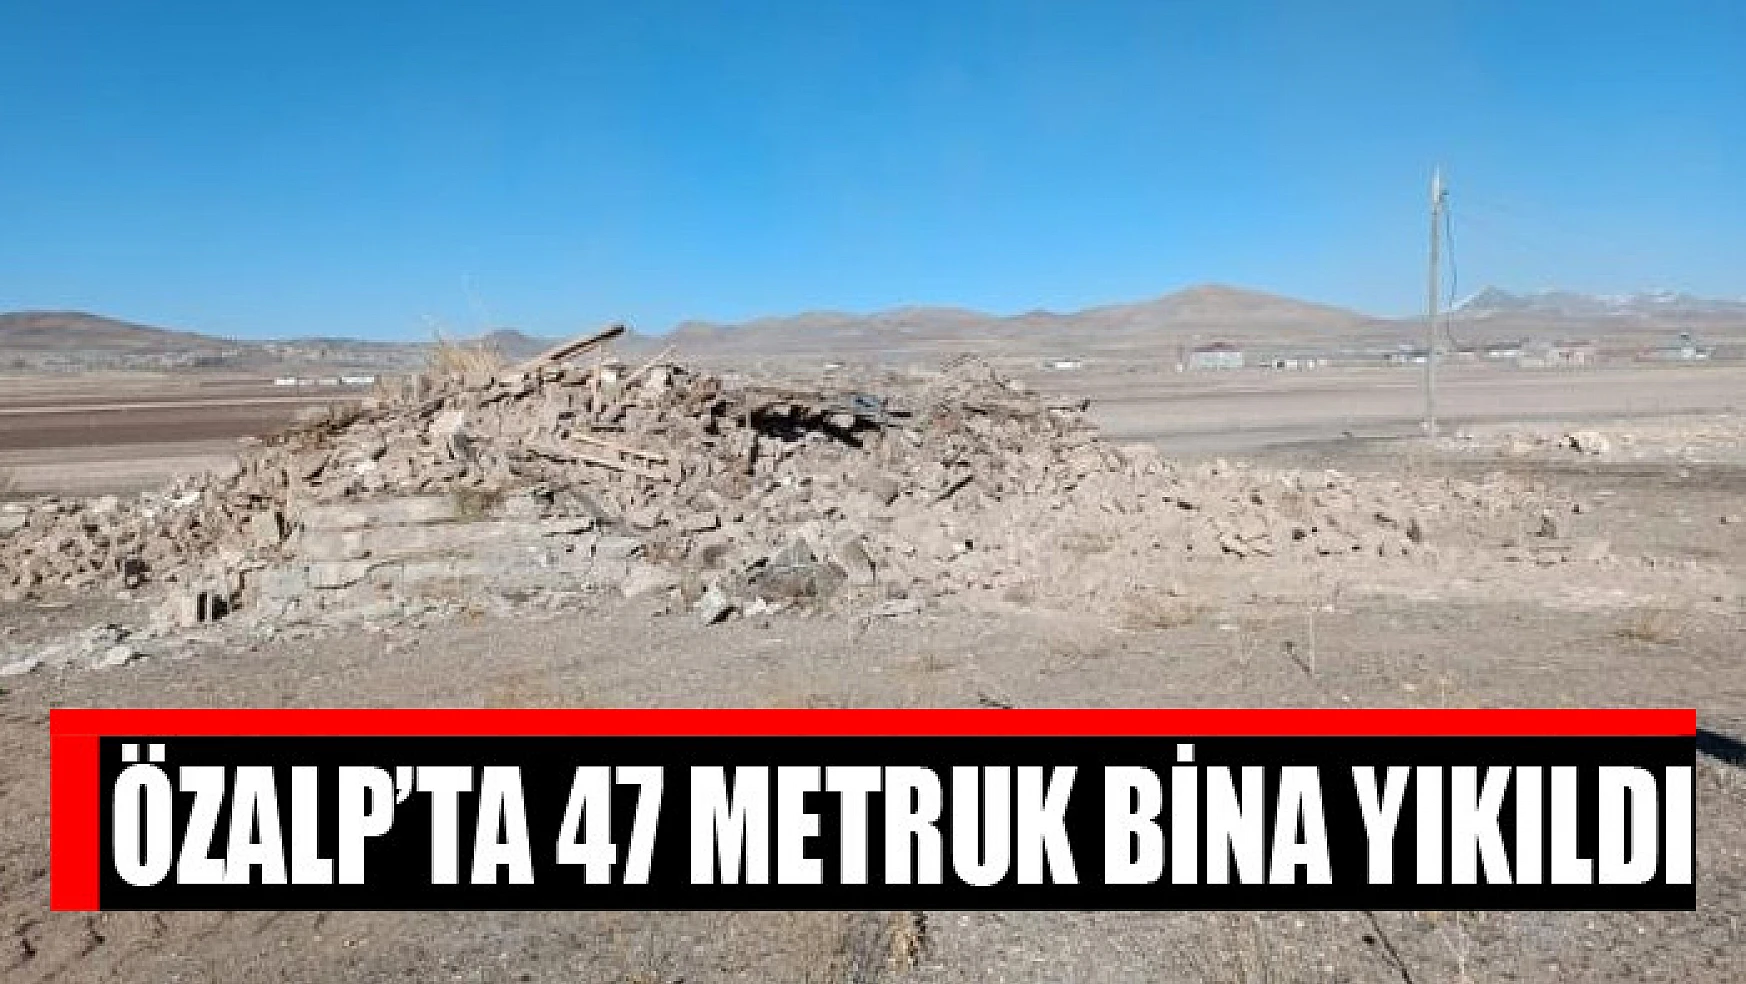 Özalp'ta 47 metruk bina yıkıldı